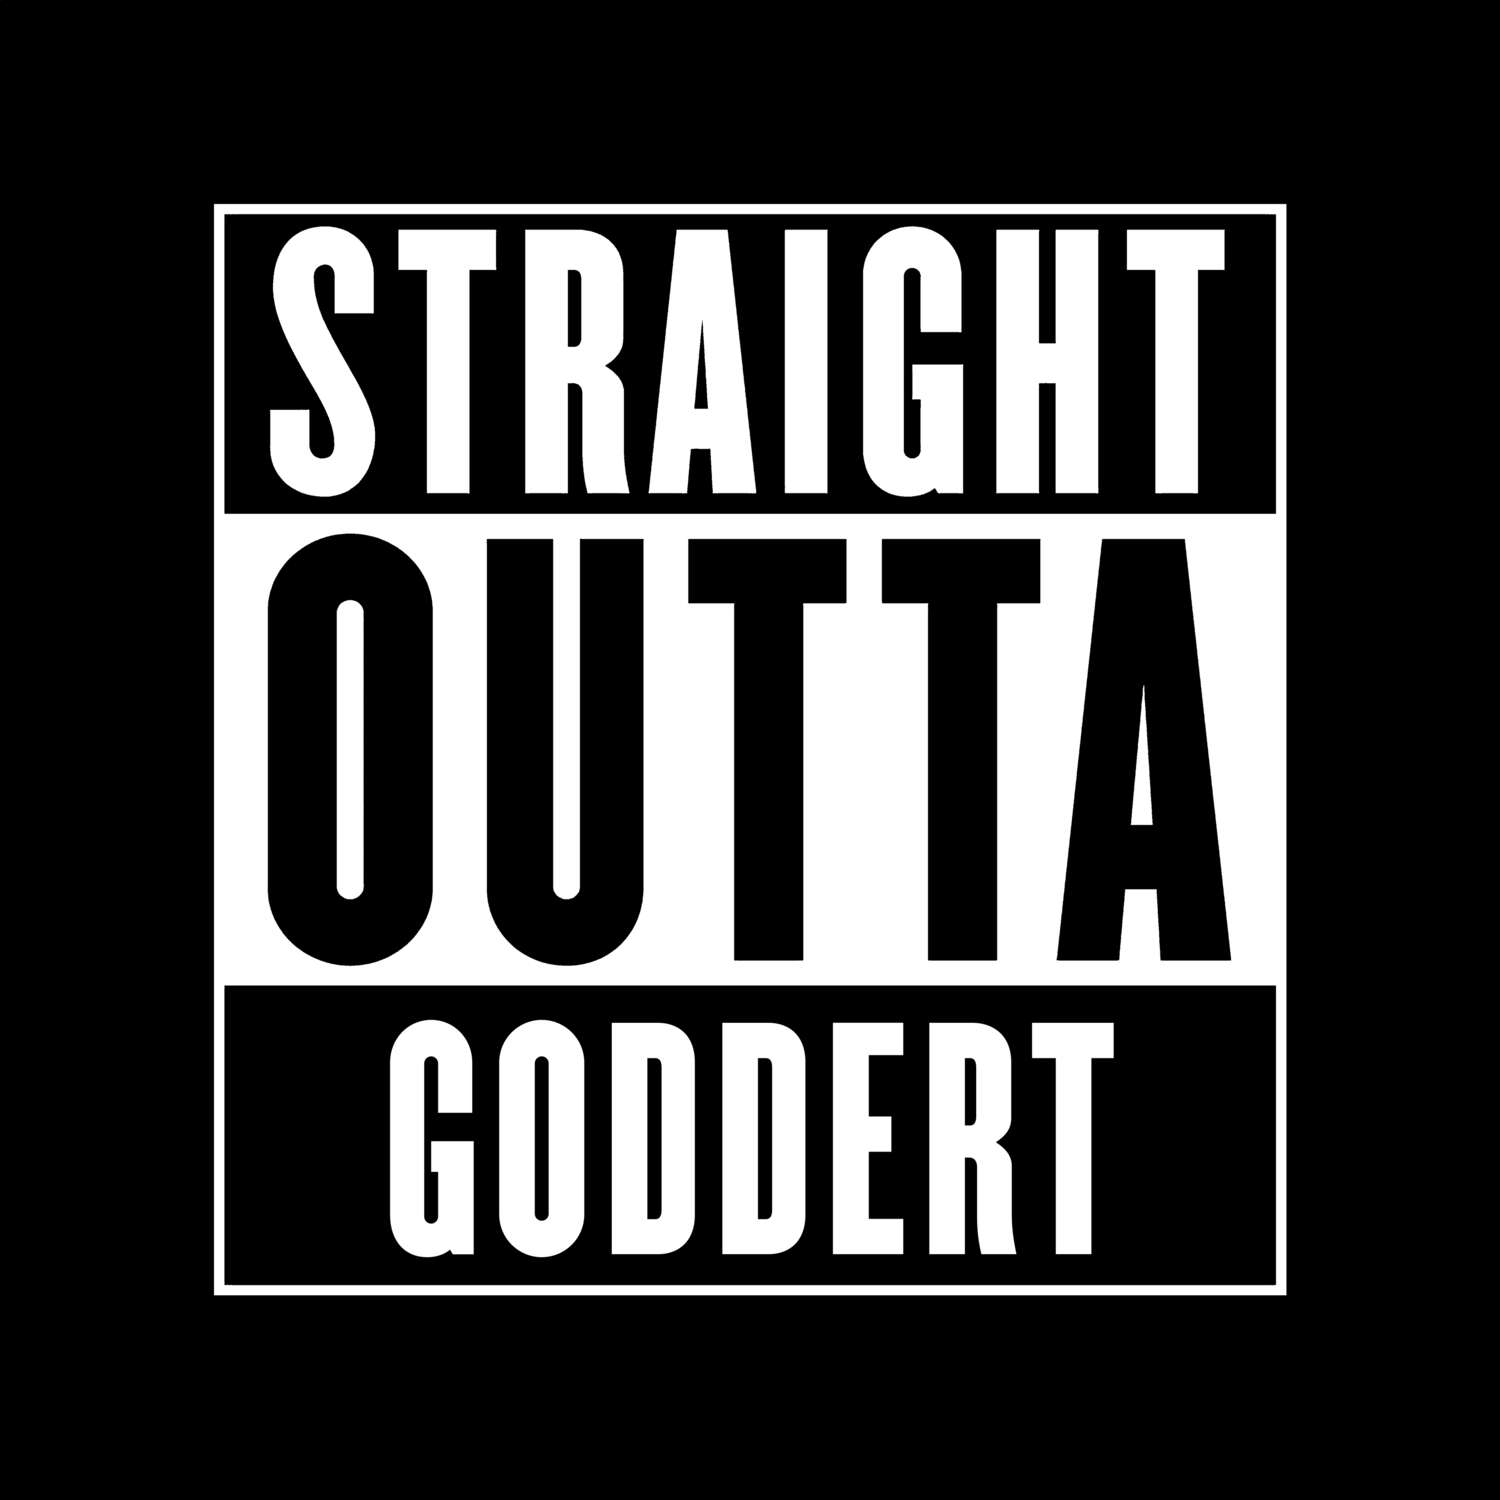 Goddert T-Shirt »Straight Outta«